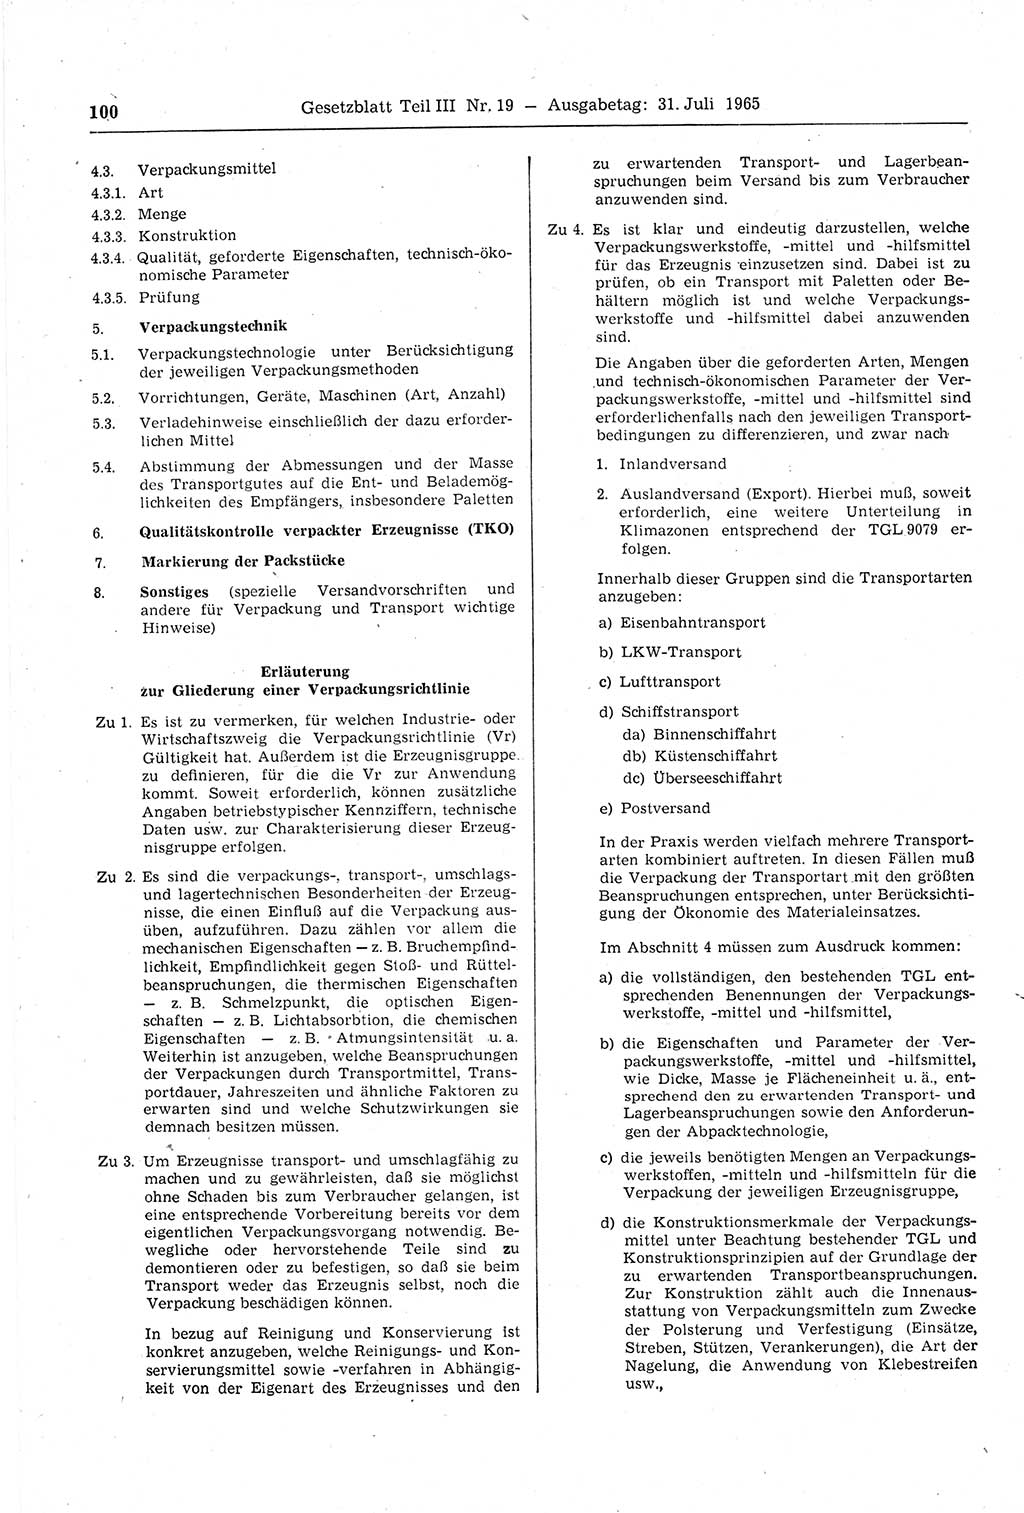 Gesetzblatt (GBl.) der Deutschen Demokratischen Republik (DDR) Teil ⅠⅠⅠ 1965, Seite 100 (GBl. DDR ⅠⅠⅠ 1965, S. 100)